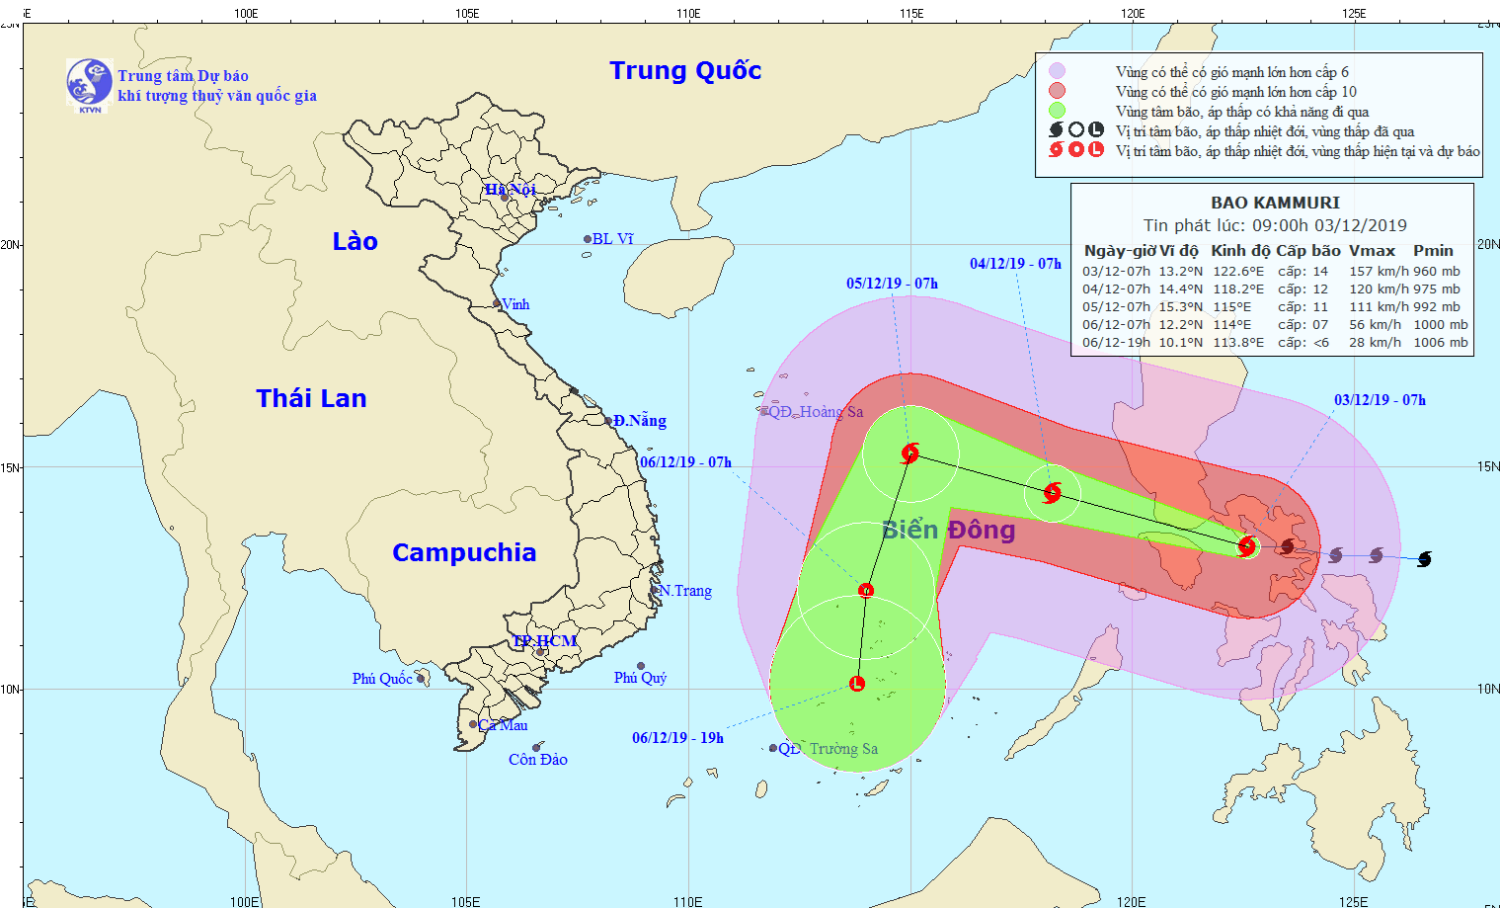 Tin bão gần Biển Đông - cơn bão KAMMURI (09h00 ngày 03/12)